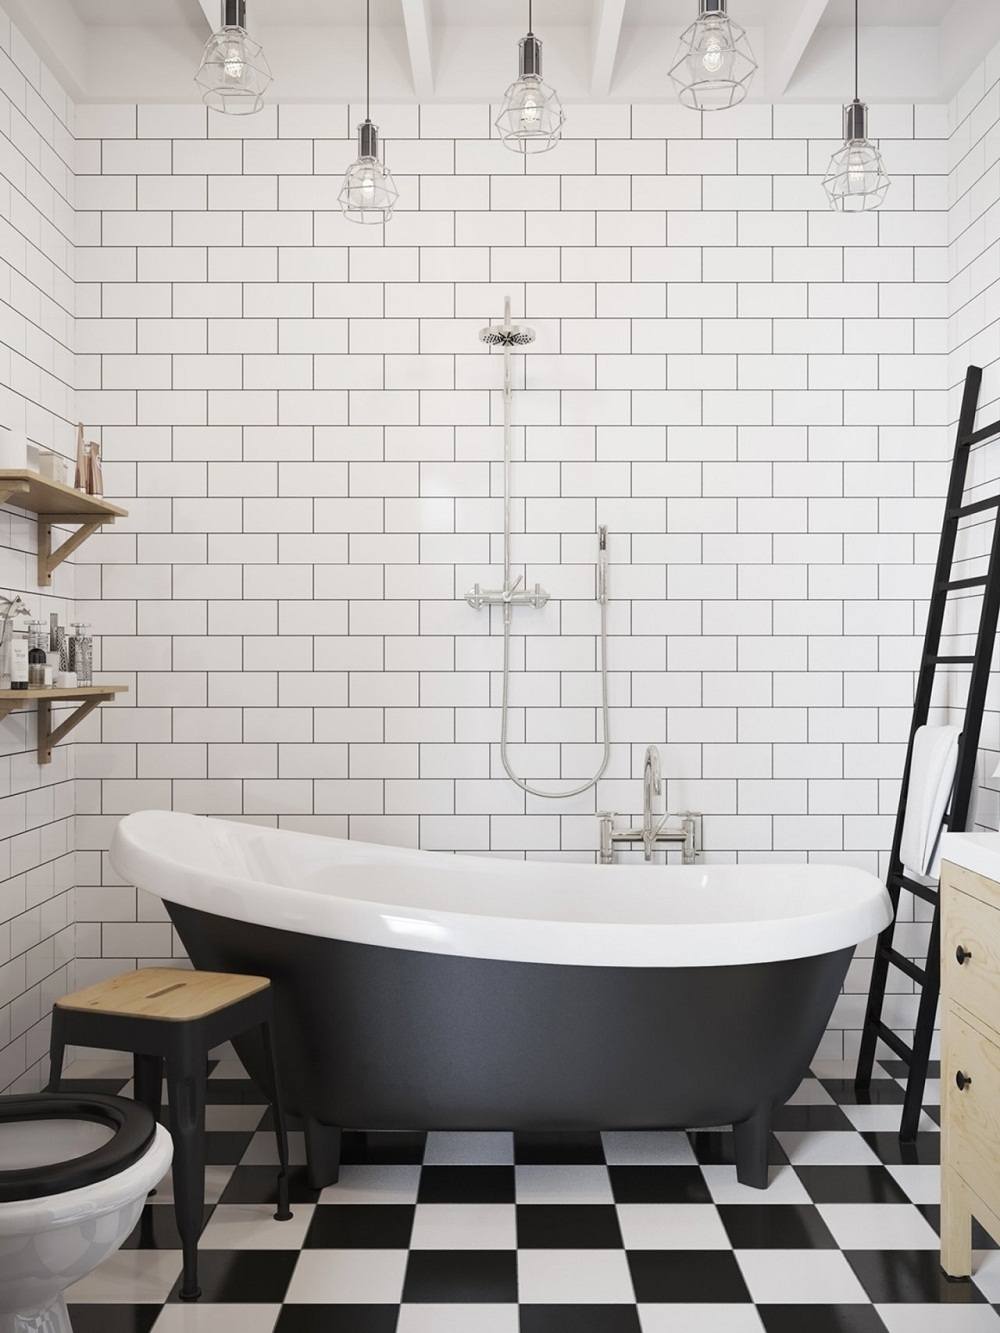 Tone màu đen - trắng giúp phòng tắm vừa mang nét hiện đại vừa cổ điên